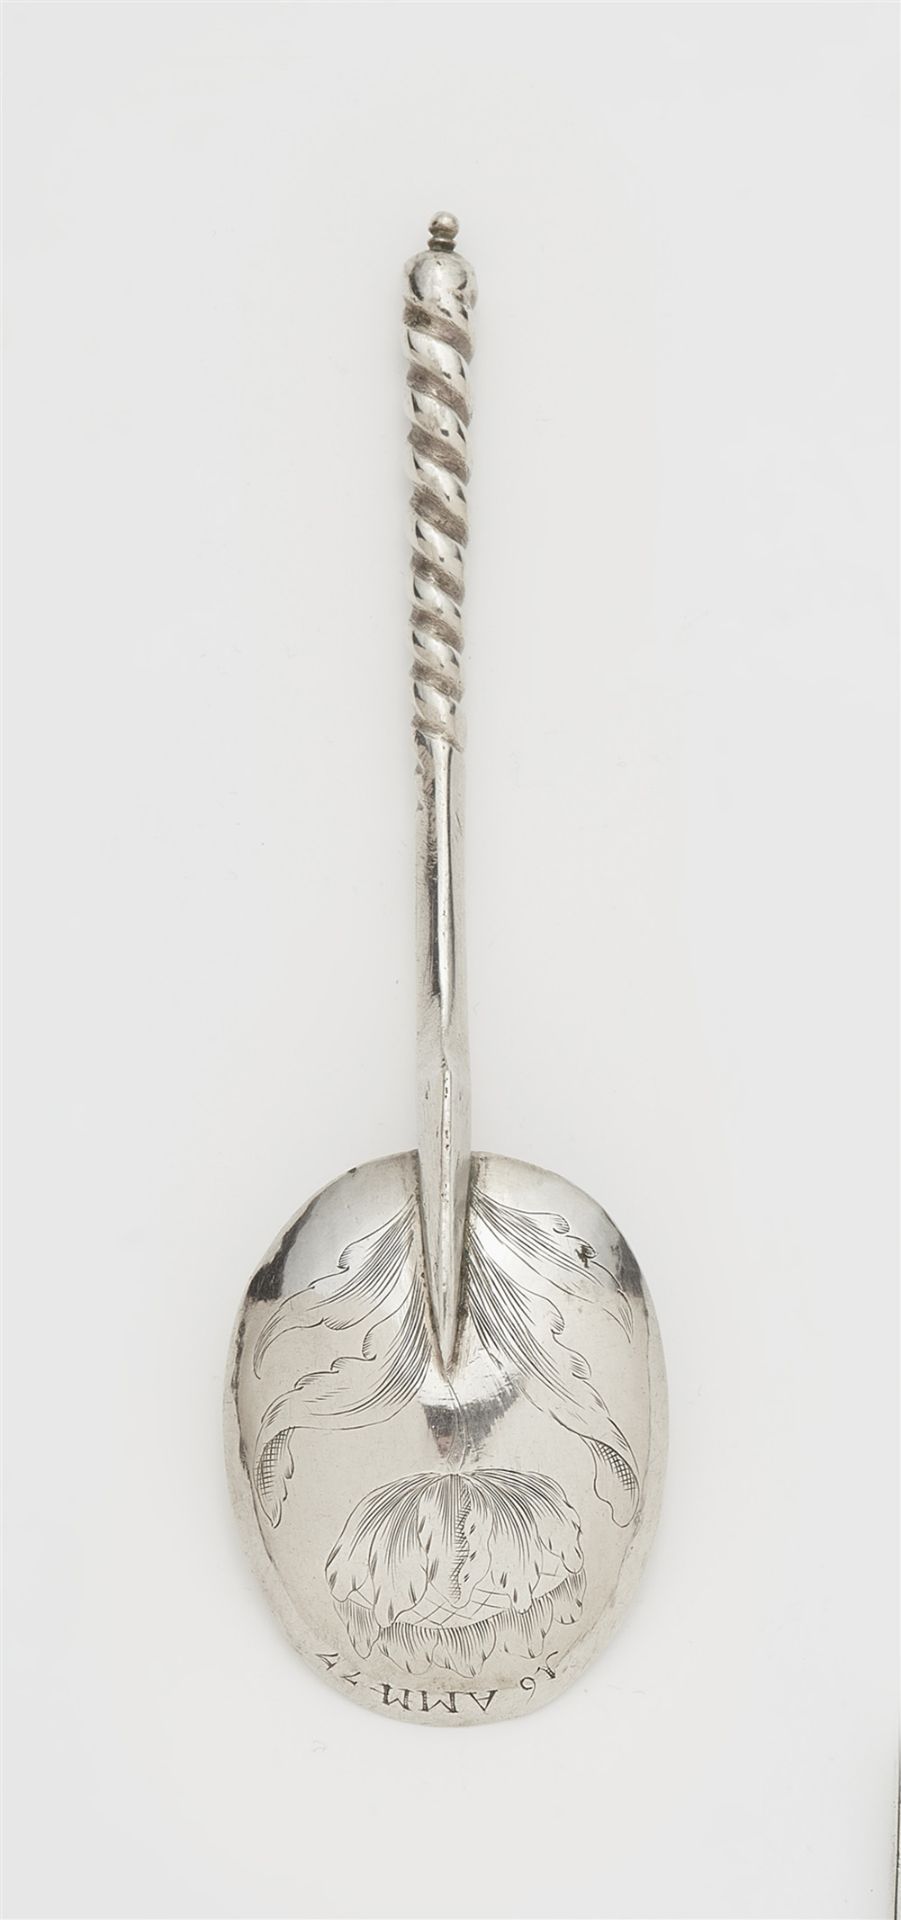 A Swiss silver spoon